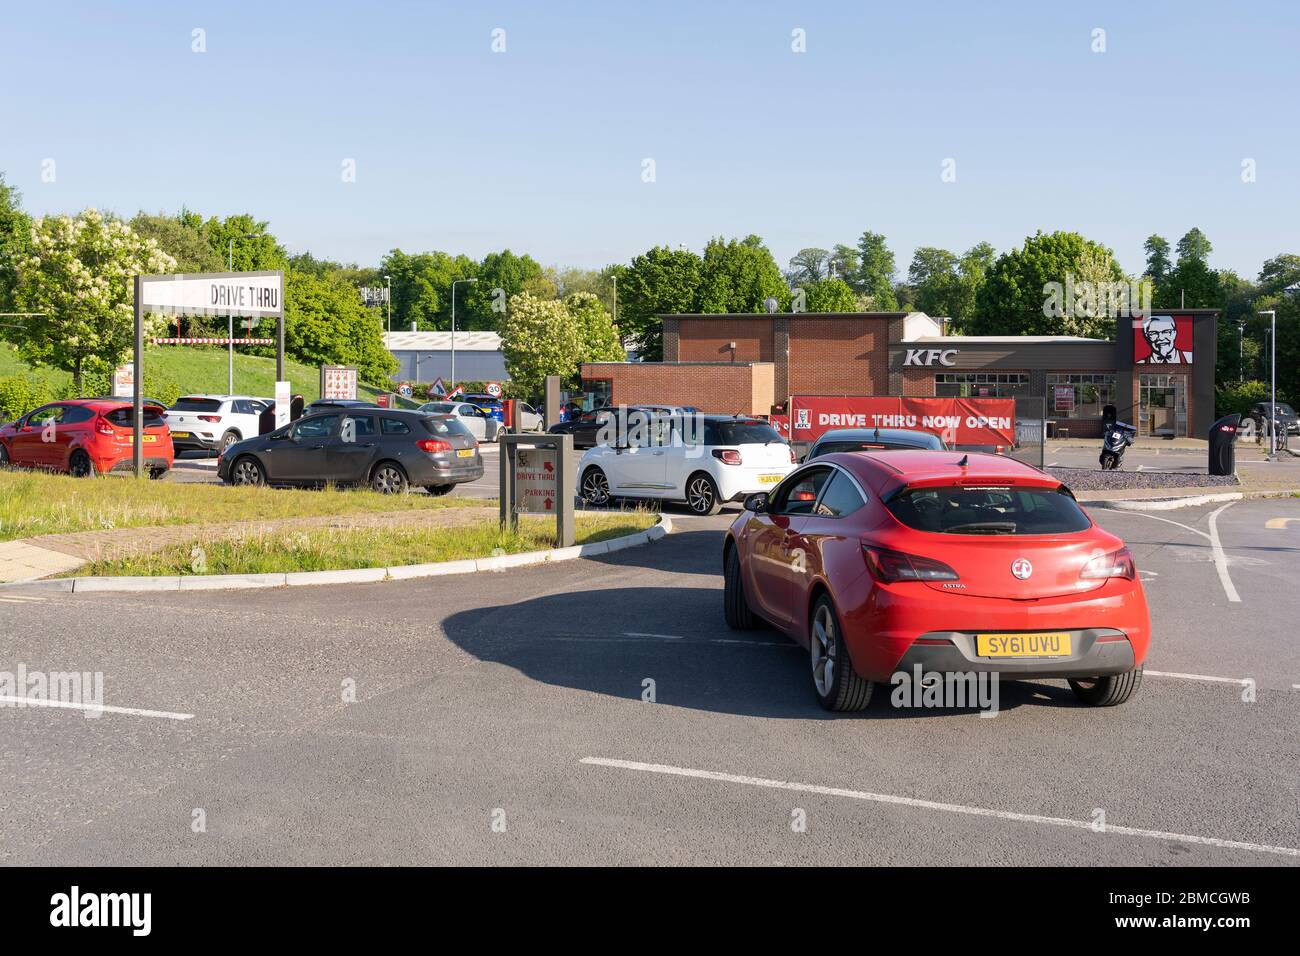 Autos, die Schlange stehen, um in KFC zu gelangen, fahren durch, da Sperrbeschränkungen für Coronavirus Covid-19 teilweise aufgehoben werden. Basingstoke, Großbritannien. Mai 2020 Stockfoto